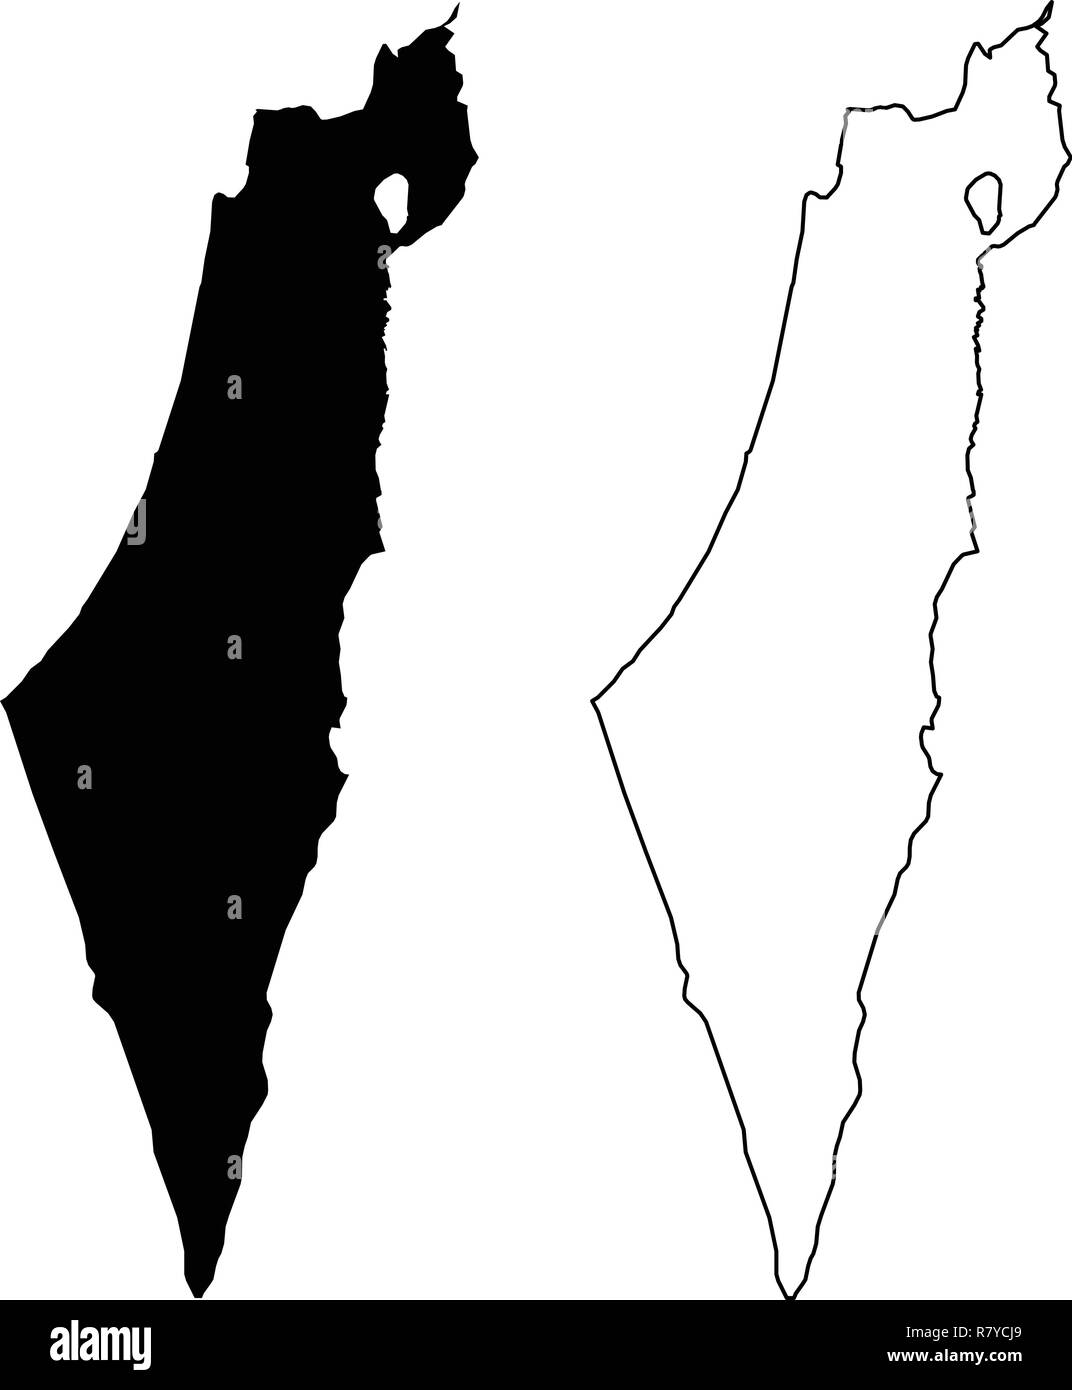 Semplice (solo angoli acuti) Mappa di Israele (compresa la Palestina - Striscia di Gaza e Cisgiordania) disegno vettoriale. Proiezione di Mercatore. Riempito e contorno ver Illustrazione Vettoriale